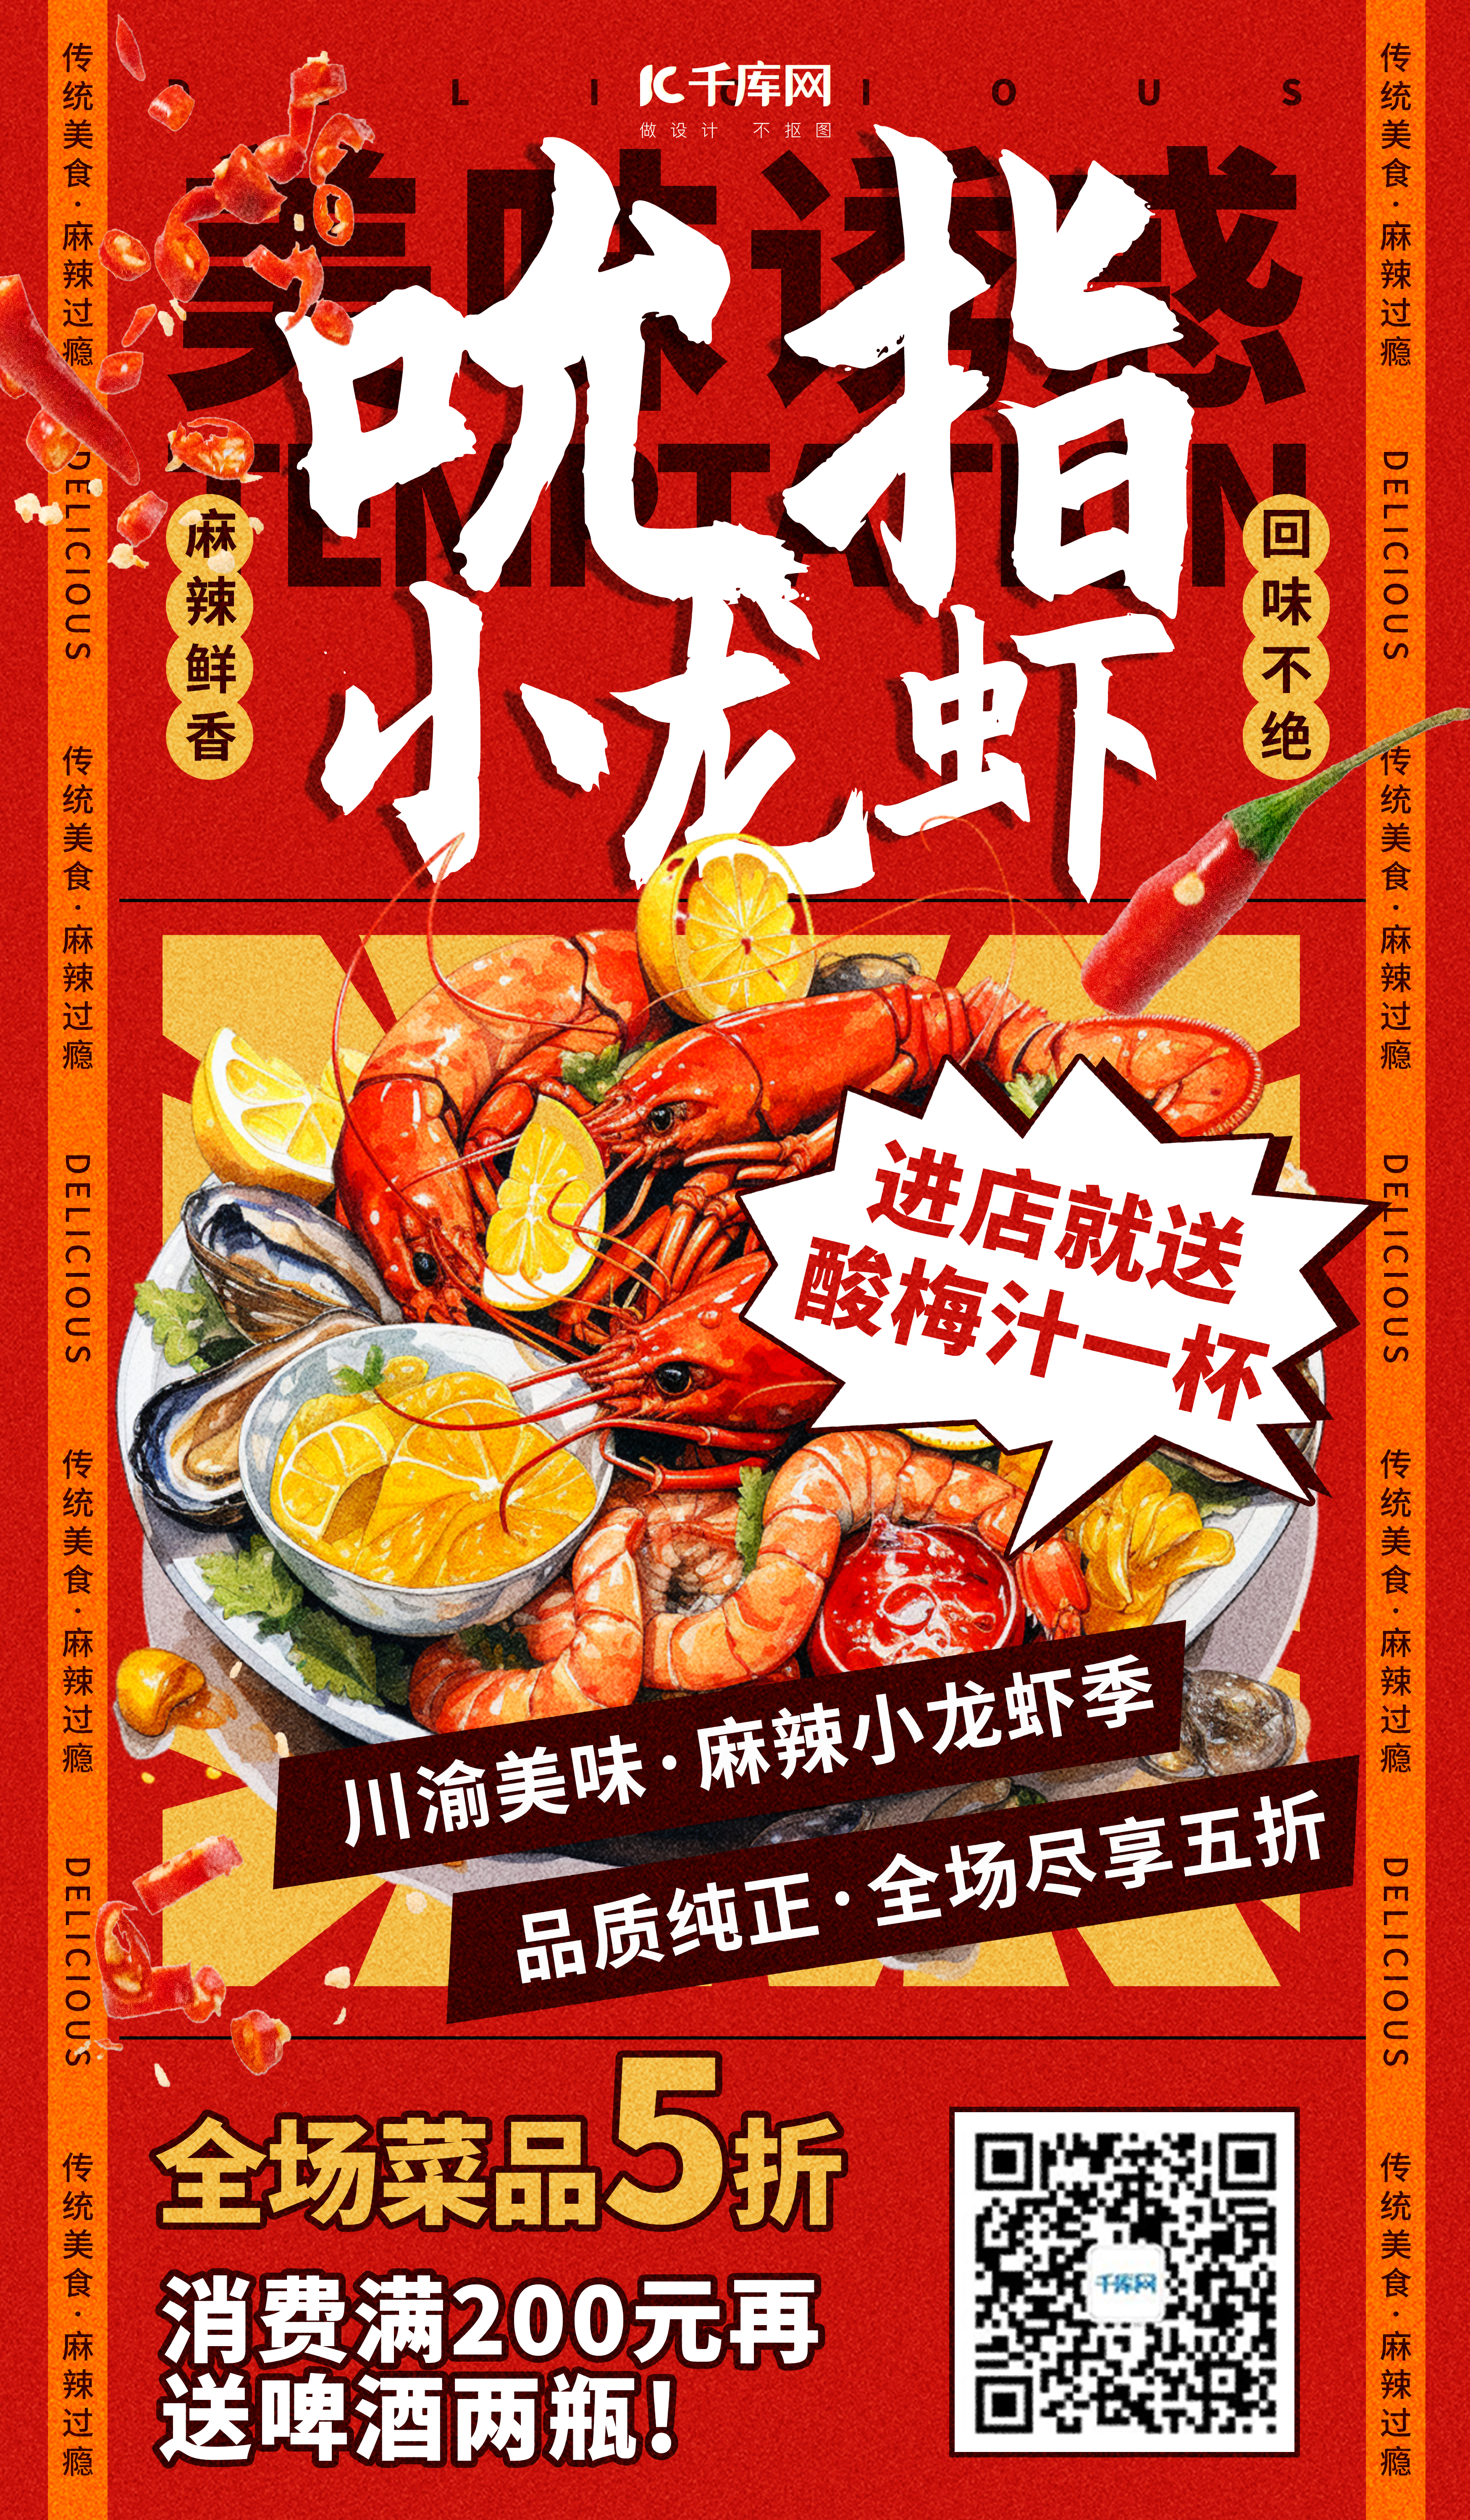 小龙虾 优惠活动红色 醒目创意海报图片